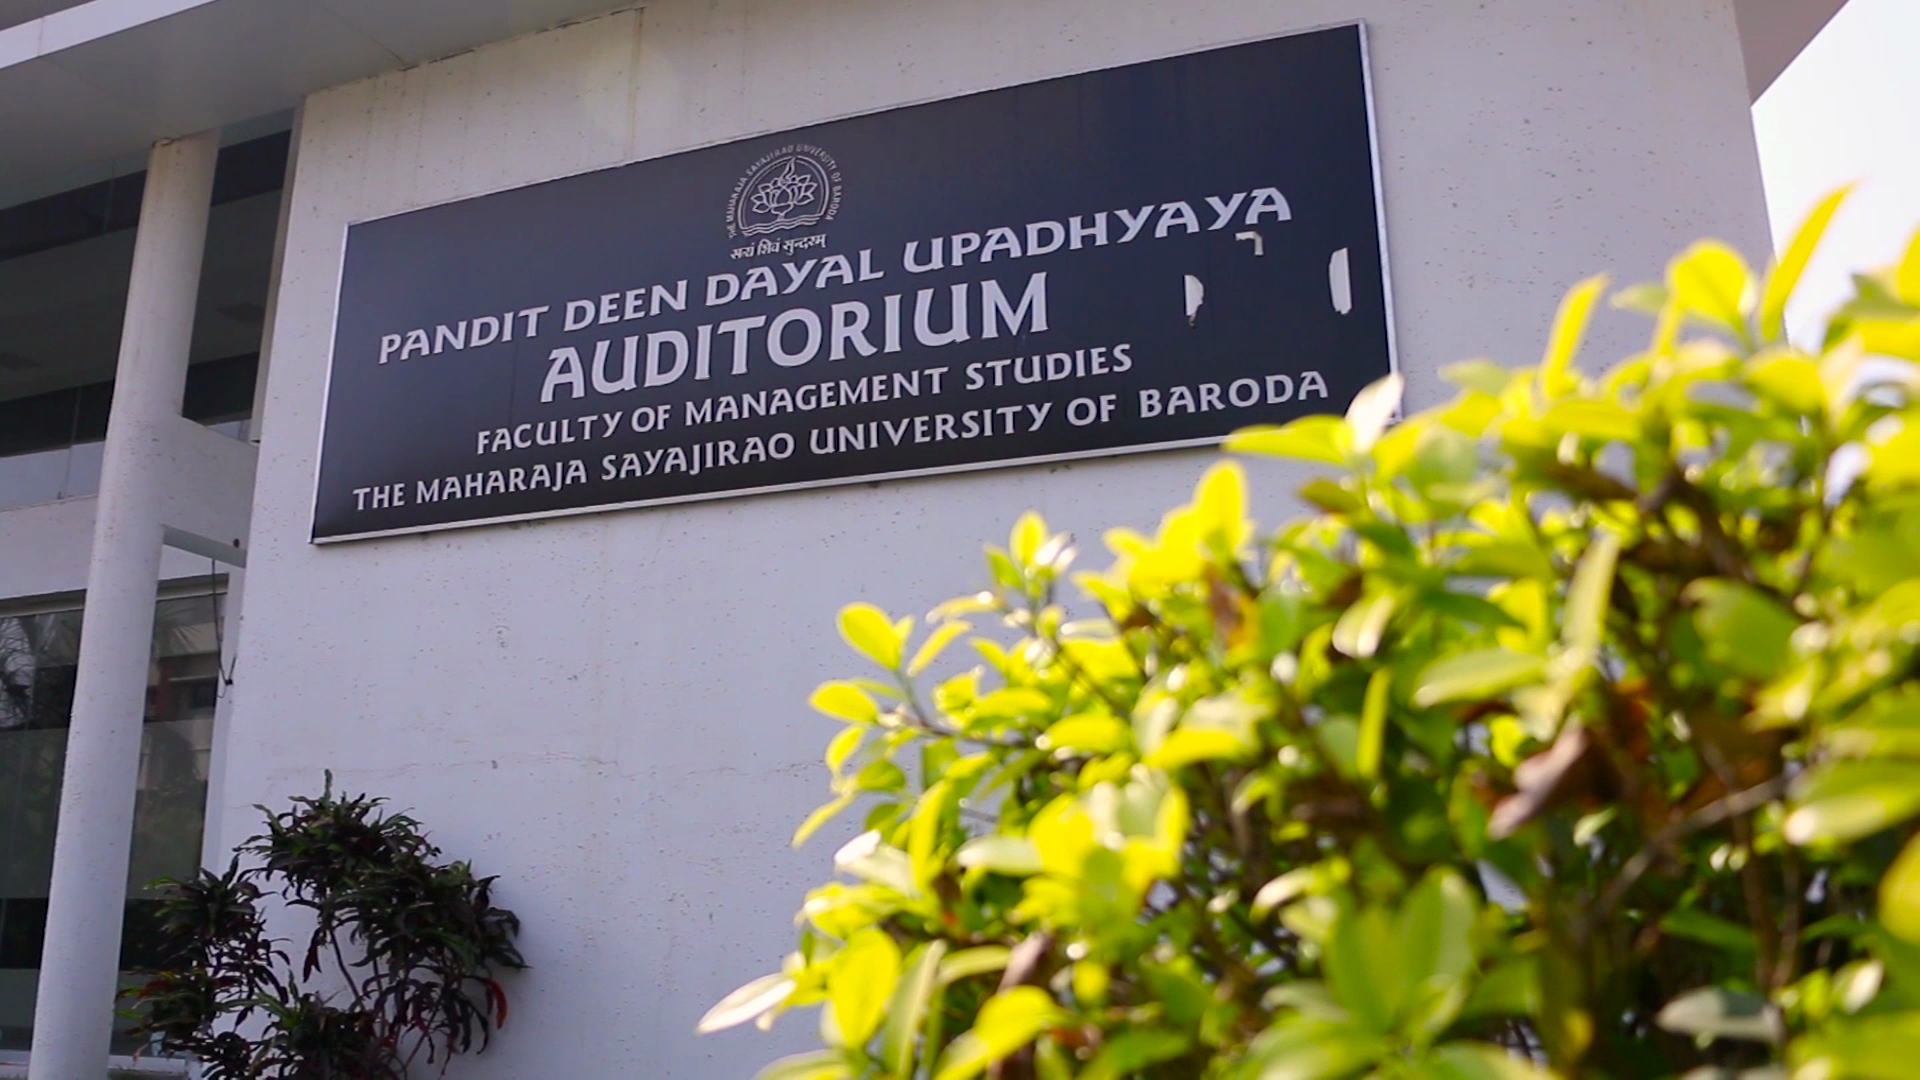  Pandit Deendayal Upadhyay Auditorium 